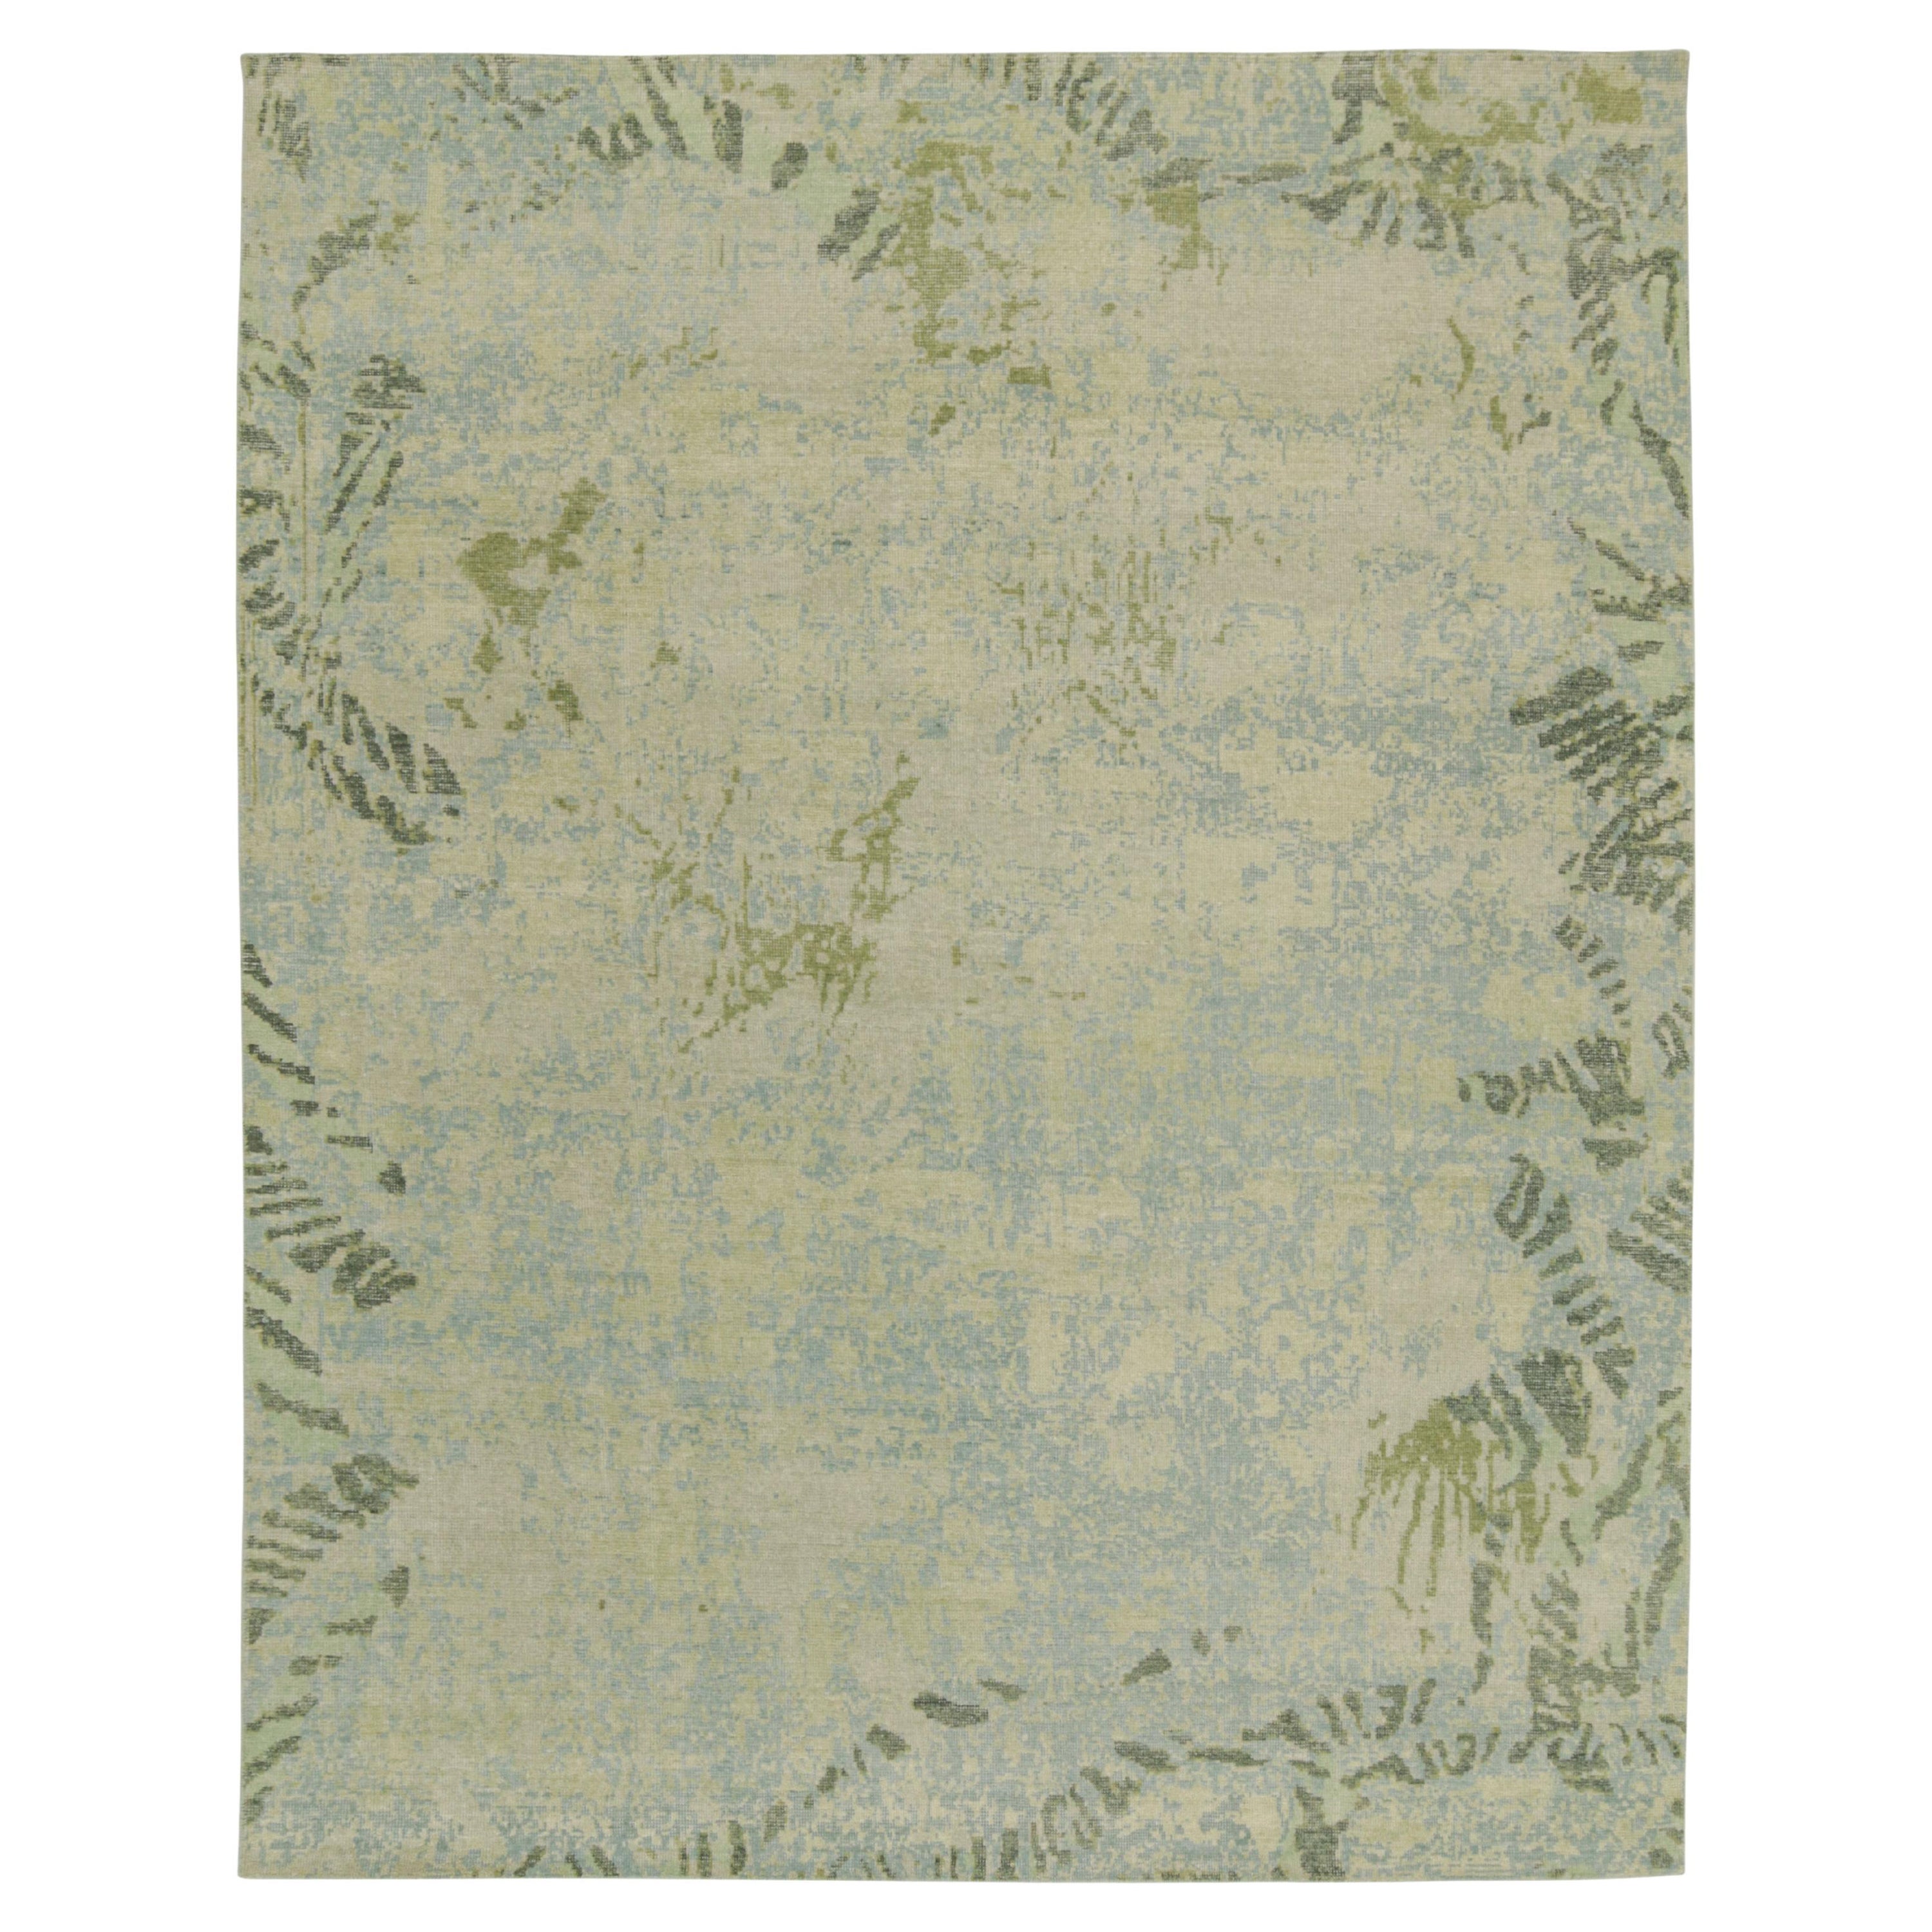 Rug & Kilim's abstrakter Teppich im Distressed-Stil mit blauem, grauem und grünem Muster